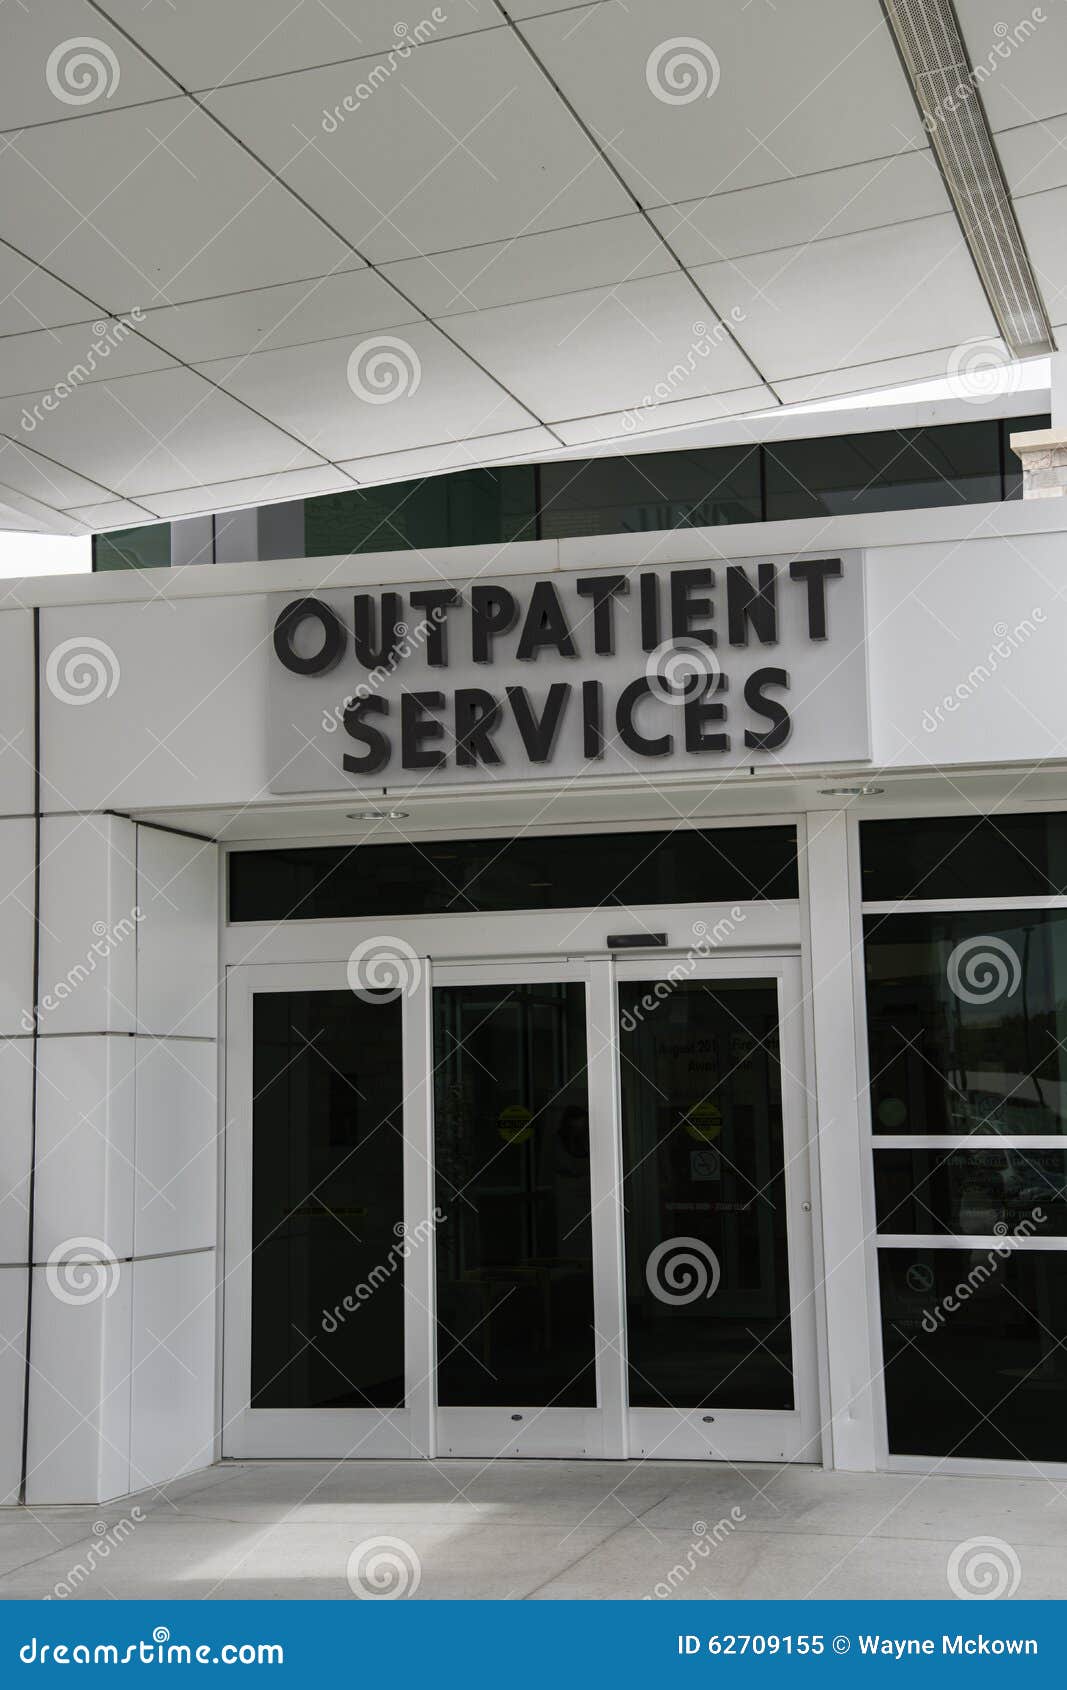 hospital outpatient services